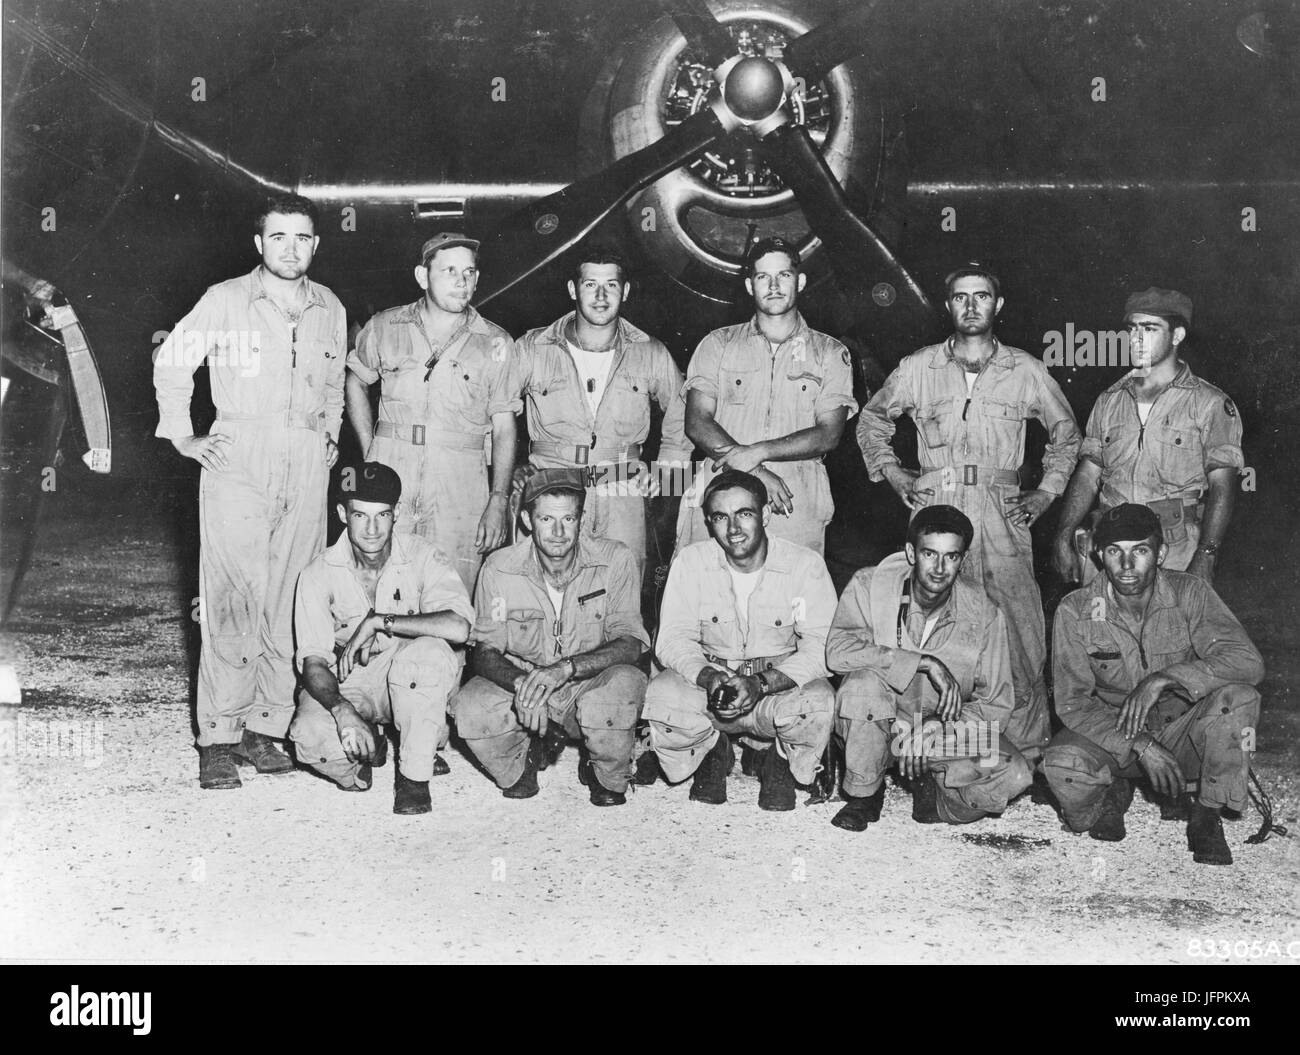 Major Charles W. Sweeney (stehend links), befehlshabender Offizier 393rd Bombardierung Geschwader und Pilot von "The Great Artiste" und seine Crew. Sweeney und seine Crew begleitet Tibbets und 'The Enola Gay' auf der Hiroshima atomare Bombardierung-Mission. 6. August 1945 Stockfoto